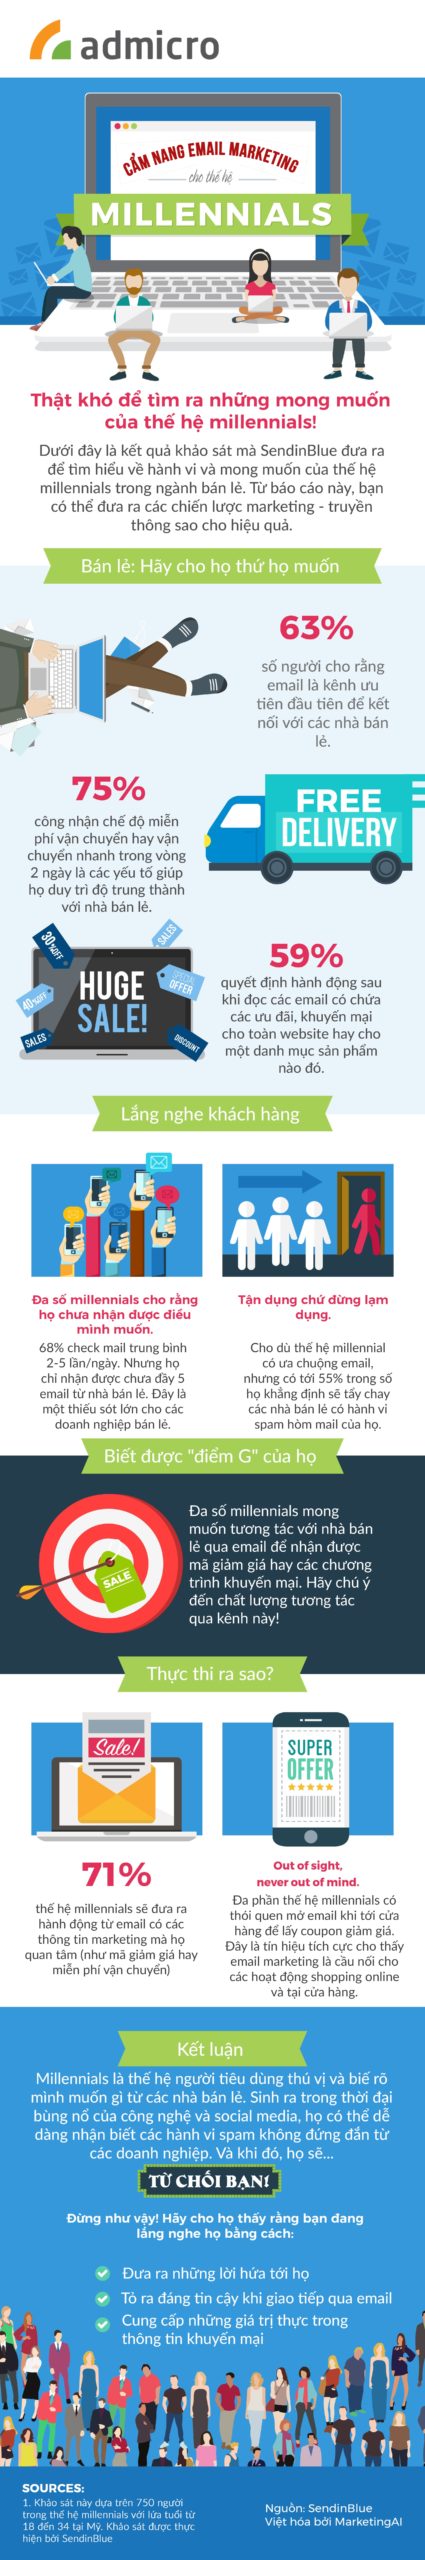 lam-the-nao-de-lam-infographic-marketing-hieu-qua3